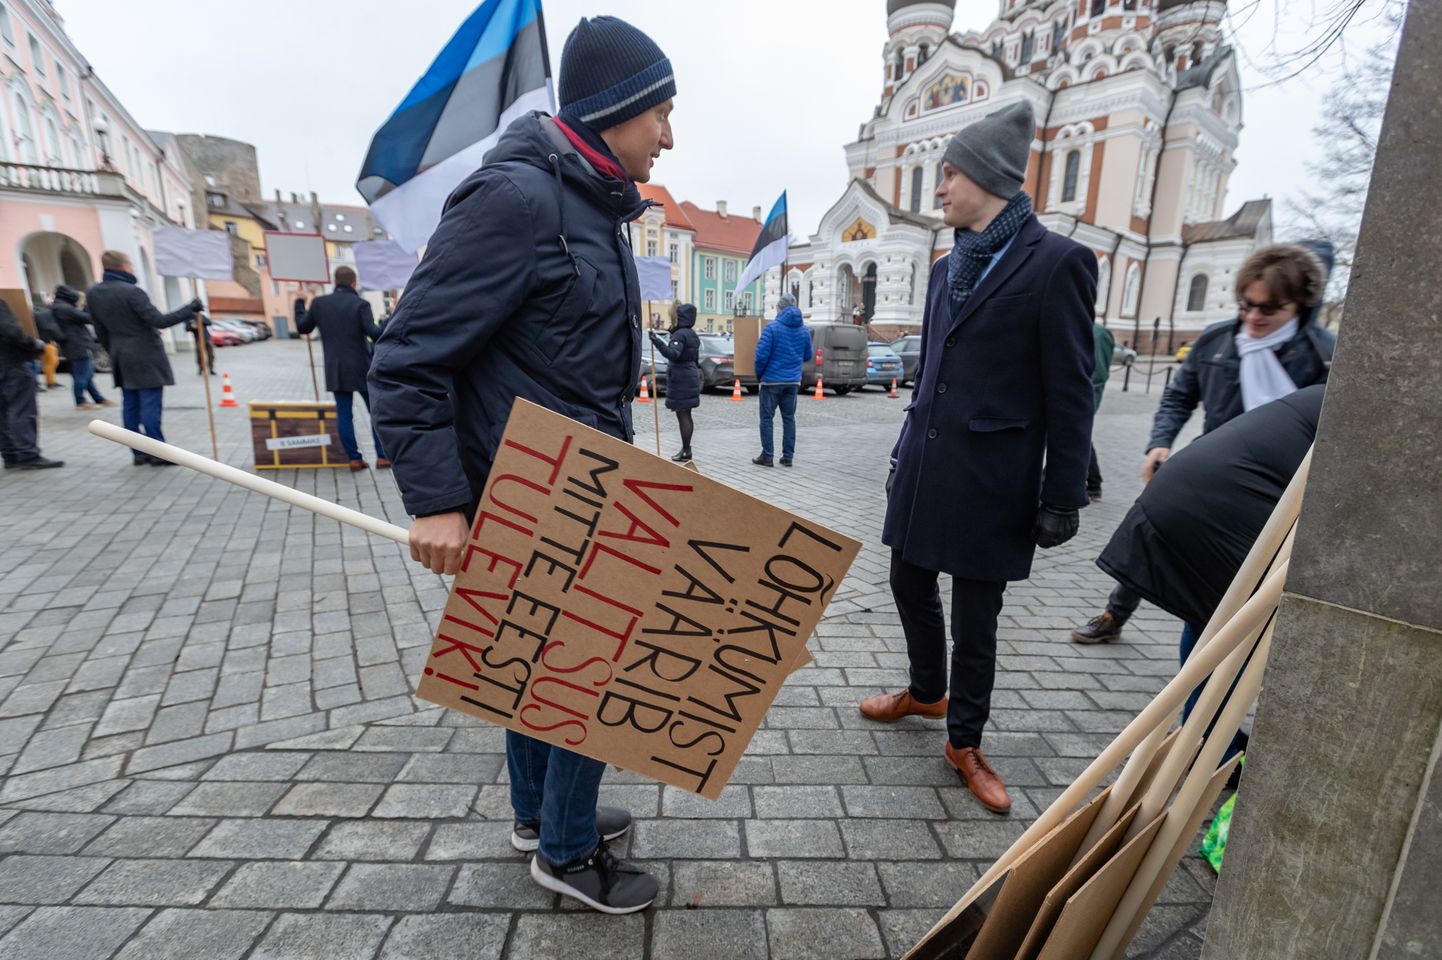 Opositsiooni meeleavaldus Riigikogu ees pensionisüsteemi muudatuste vastu jaanuaris.
Foto on illustratiivne.